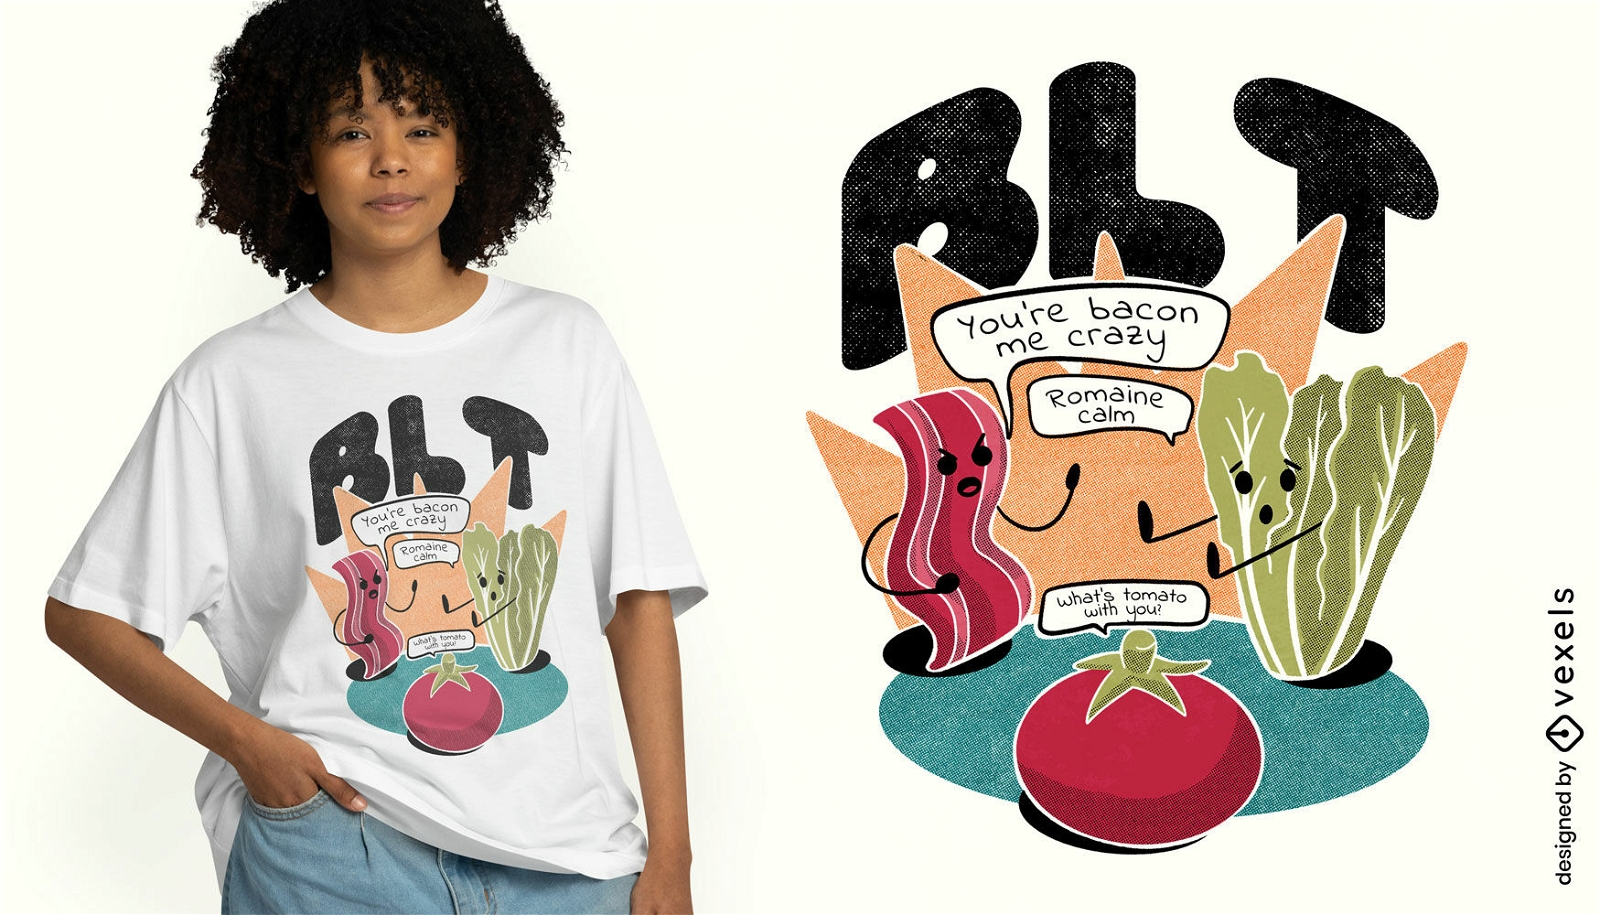 Diseño de camiseta de juego de palabras con personajes de comida.